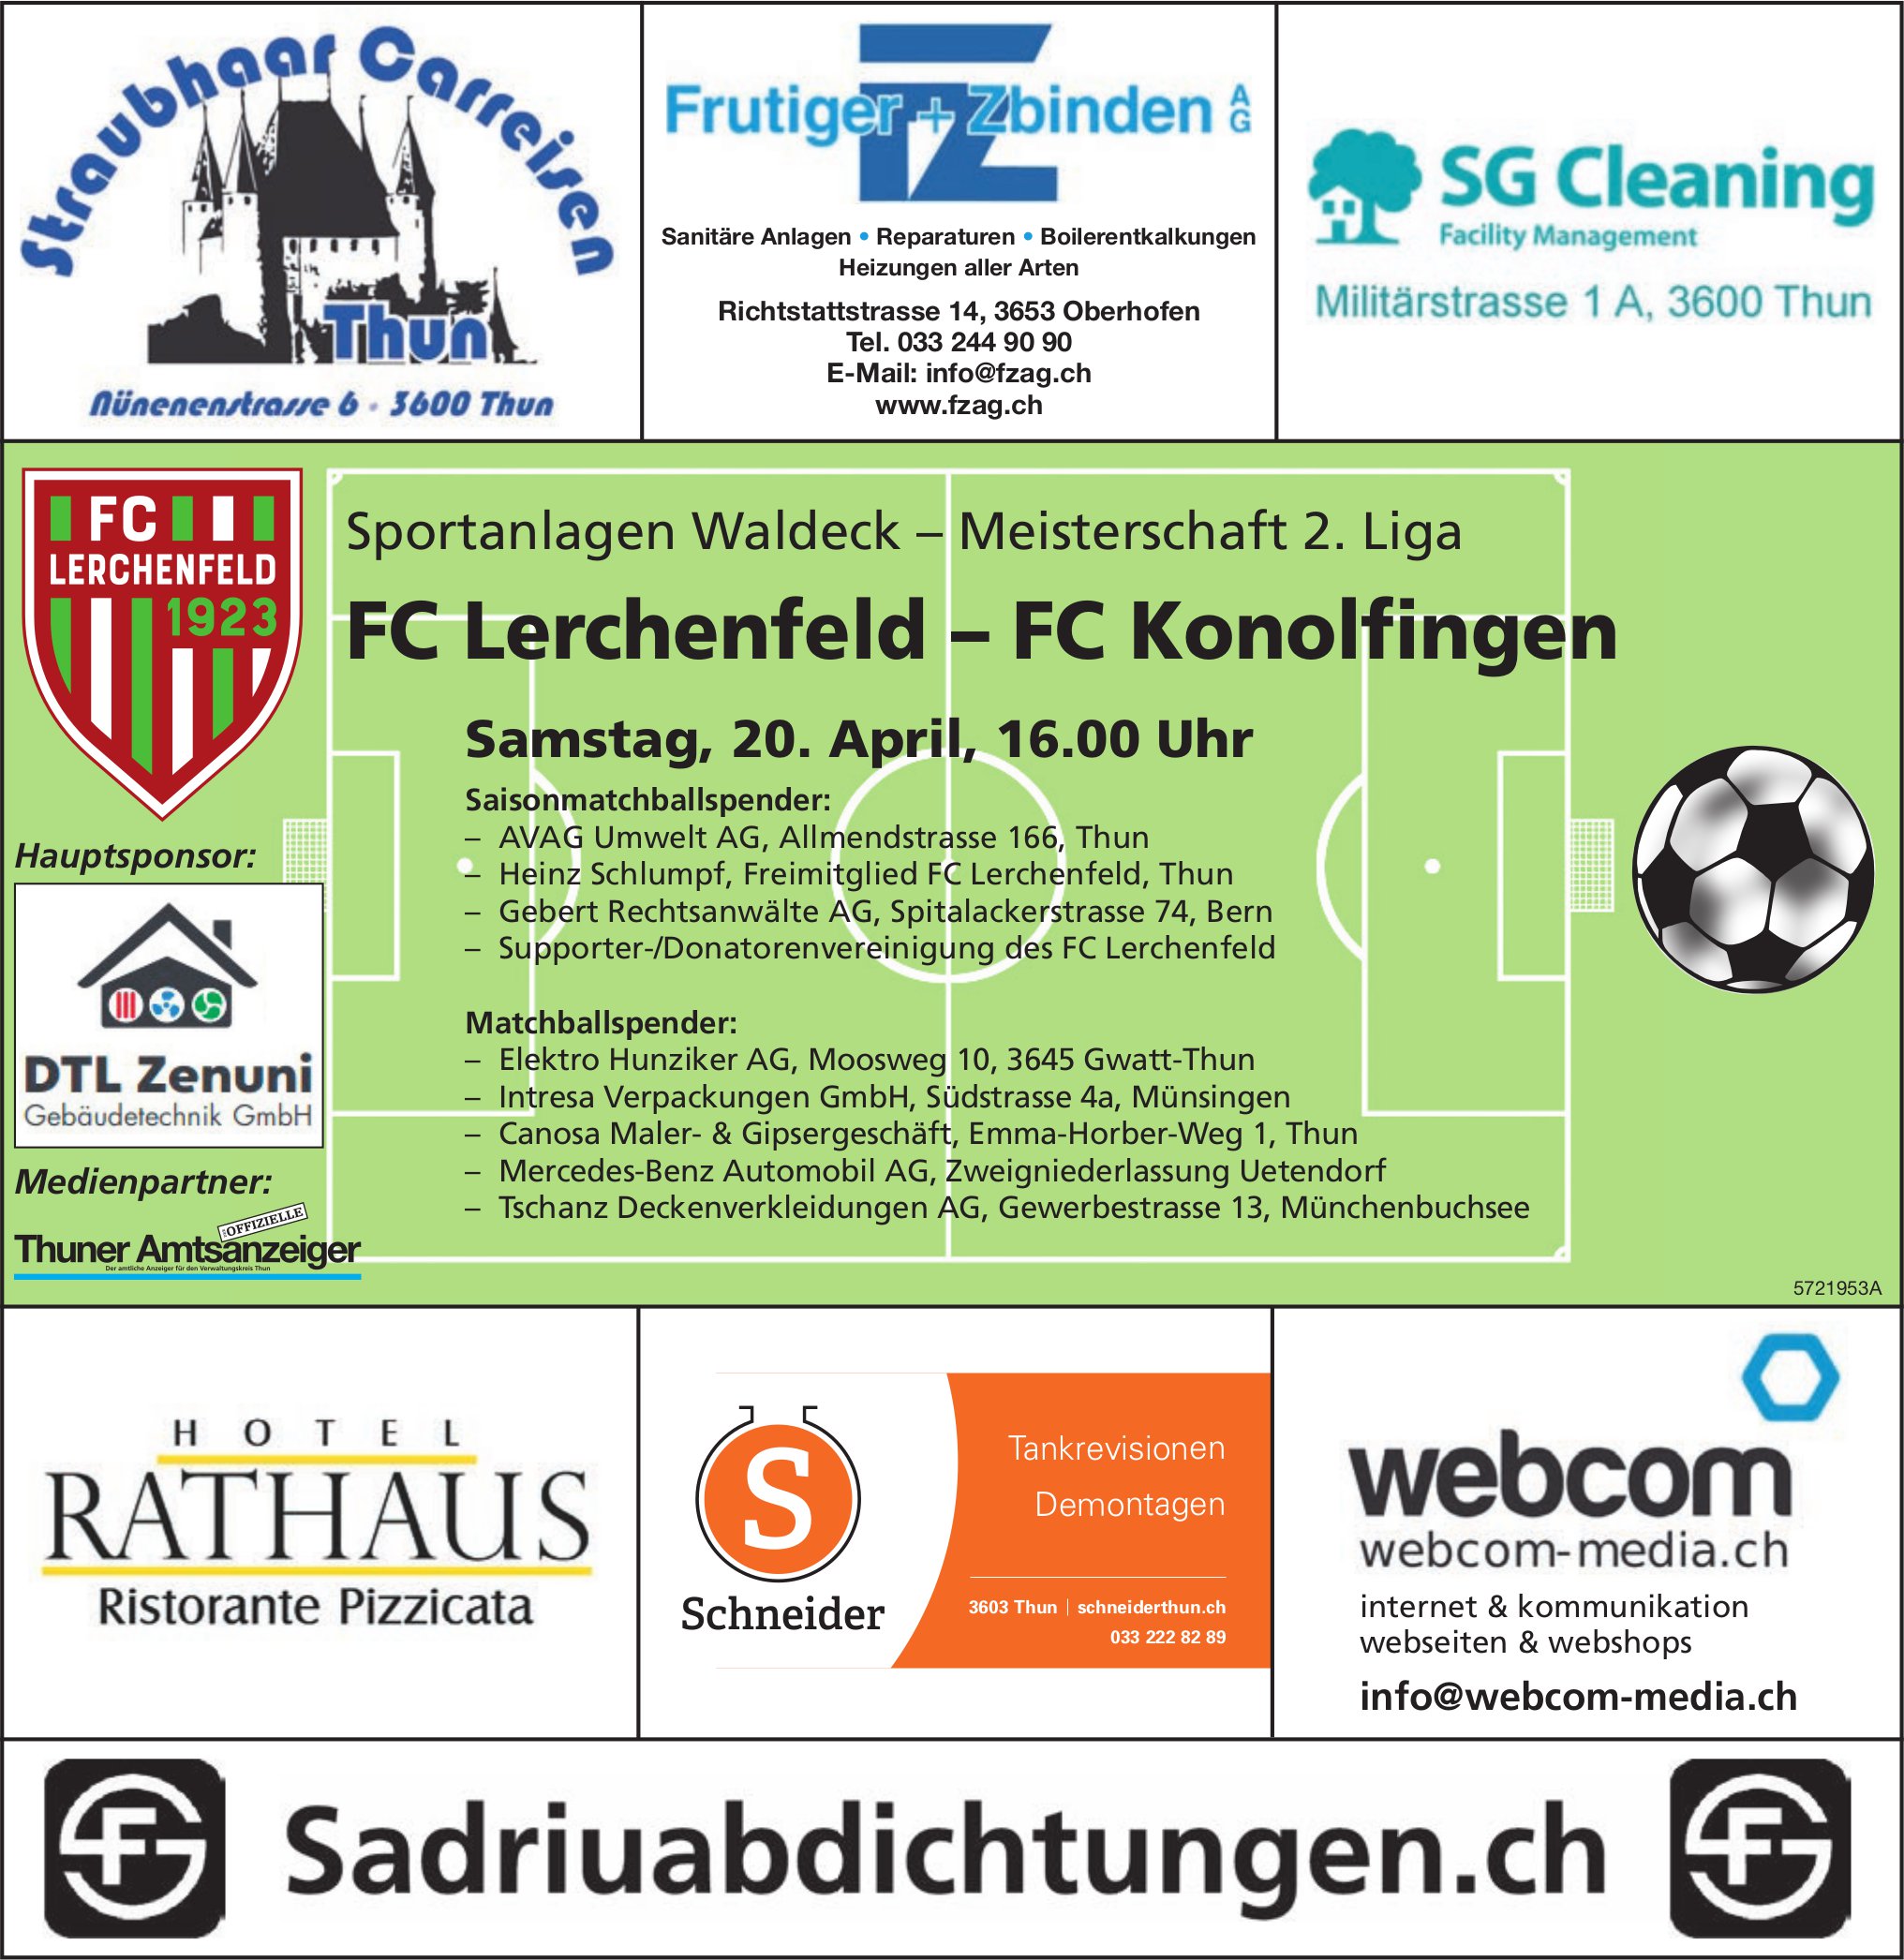 FC Lerchenfeld vs. FC Konolfingen, 20. April, Sportanlagen Waldeck